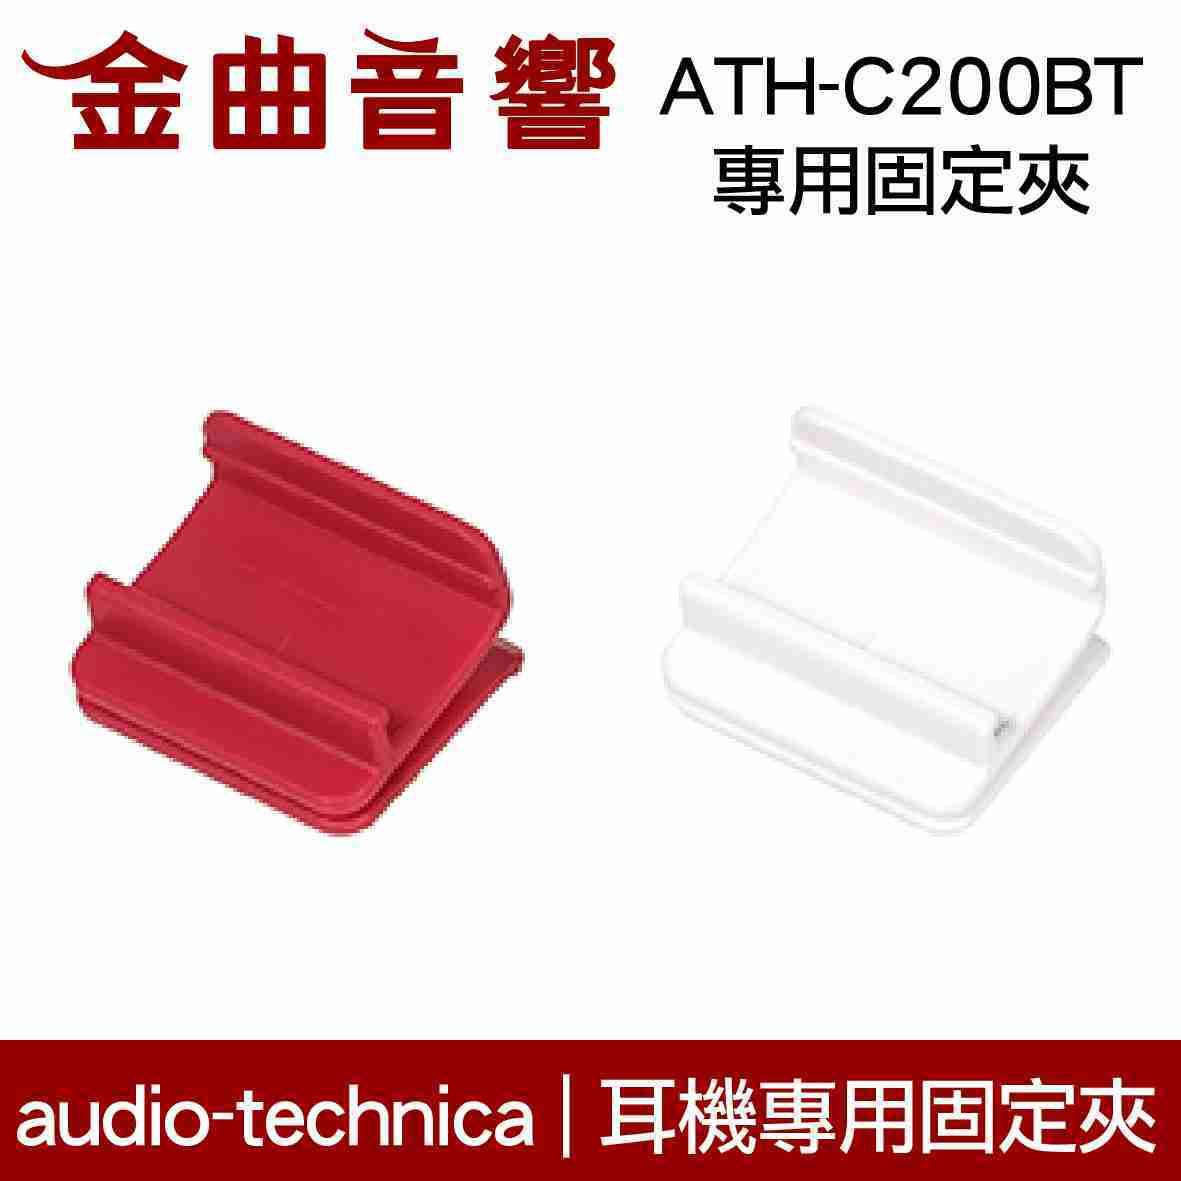 鐵三角 白色 固定夾 適用 ATH-C200BT 耳機 專用夾 | 金曲音響